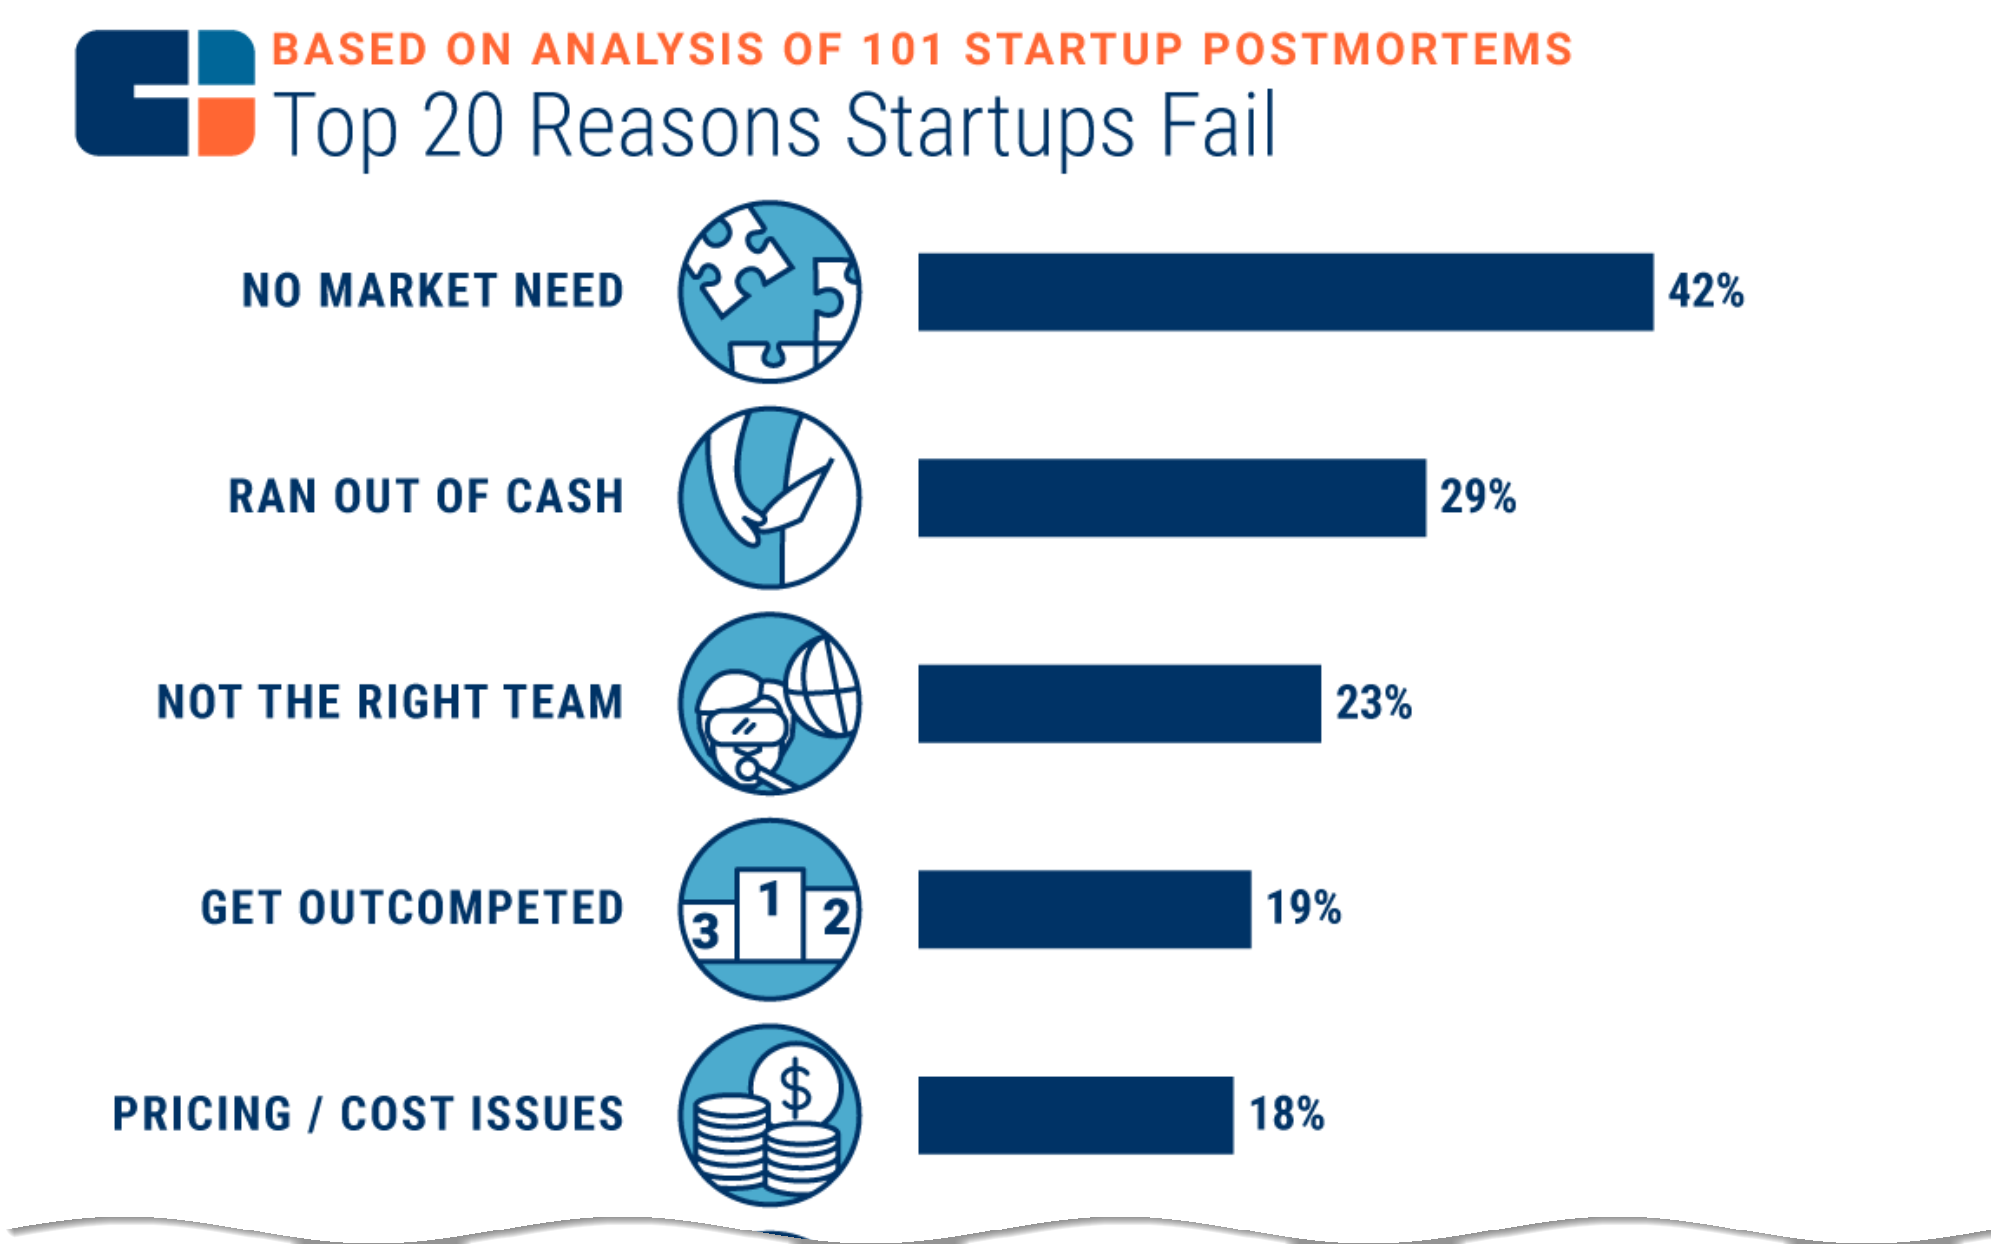 chart of reasons startup fail. No market need is #1 at 42%